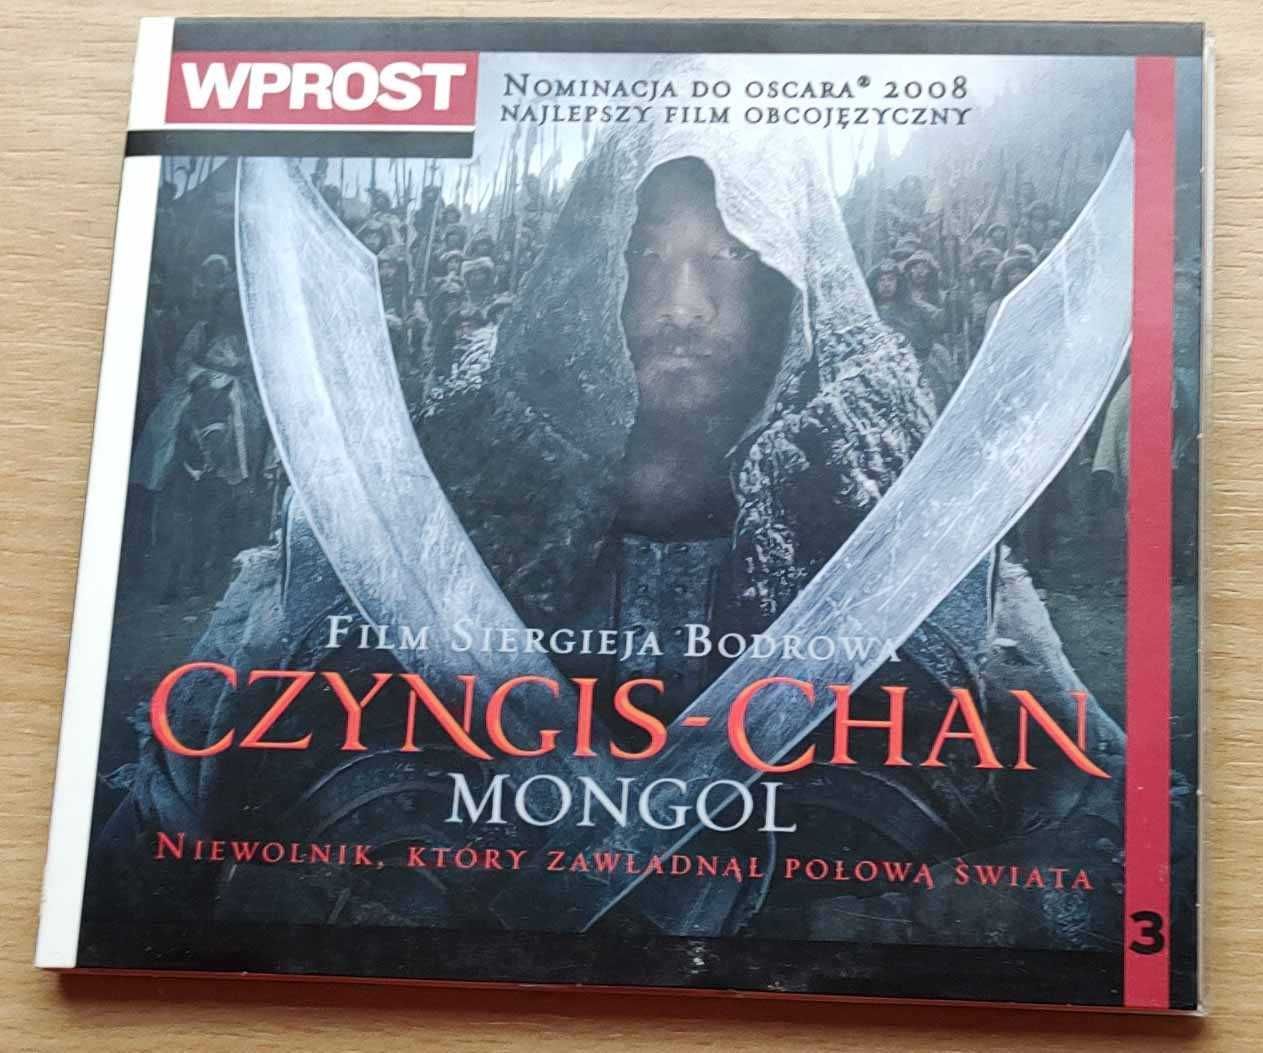 Czyngis Chan, Mongol - film Siergieja Bodrowa na płycie dvd- 2007